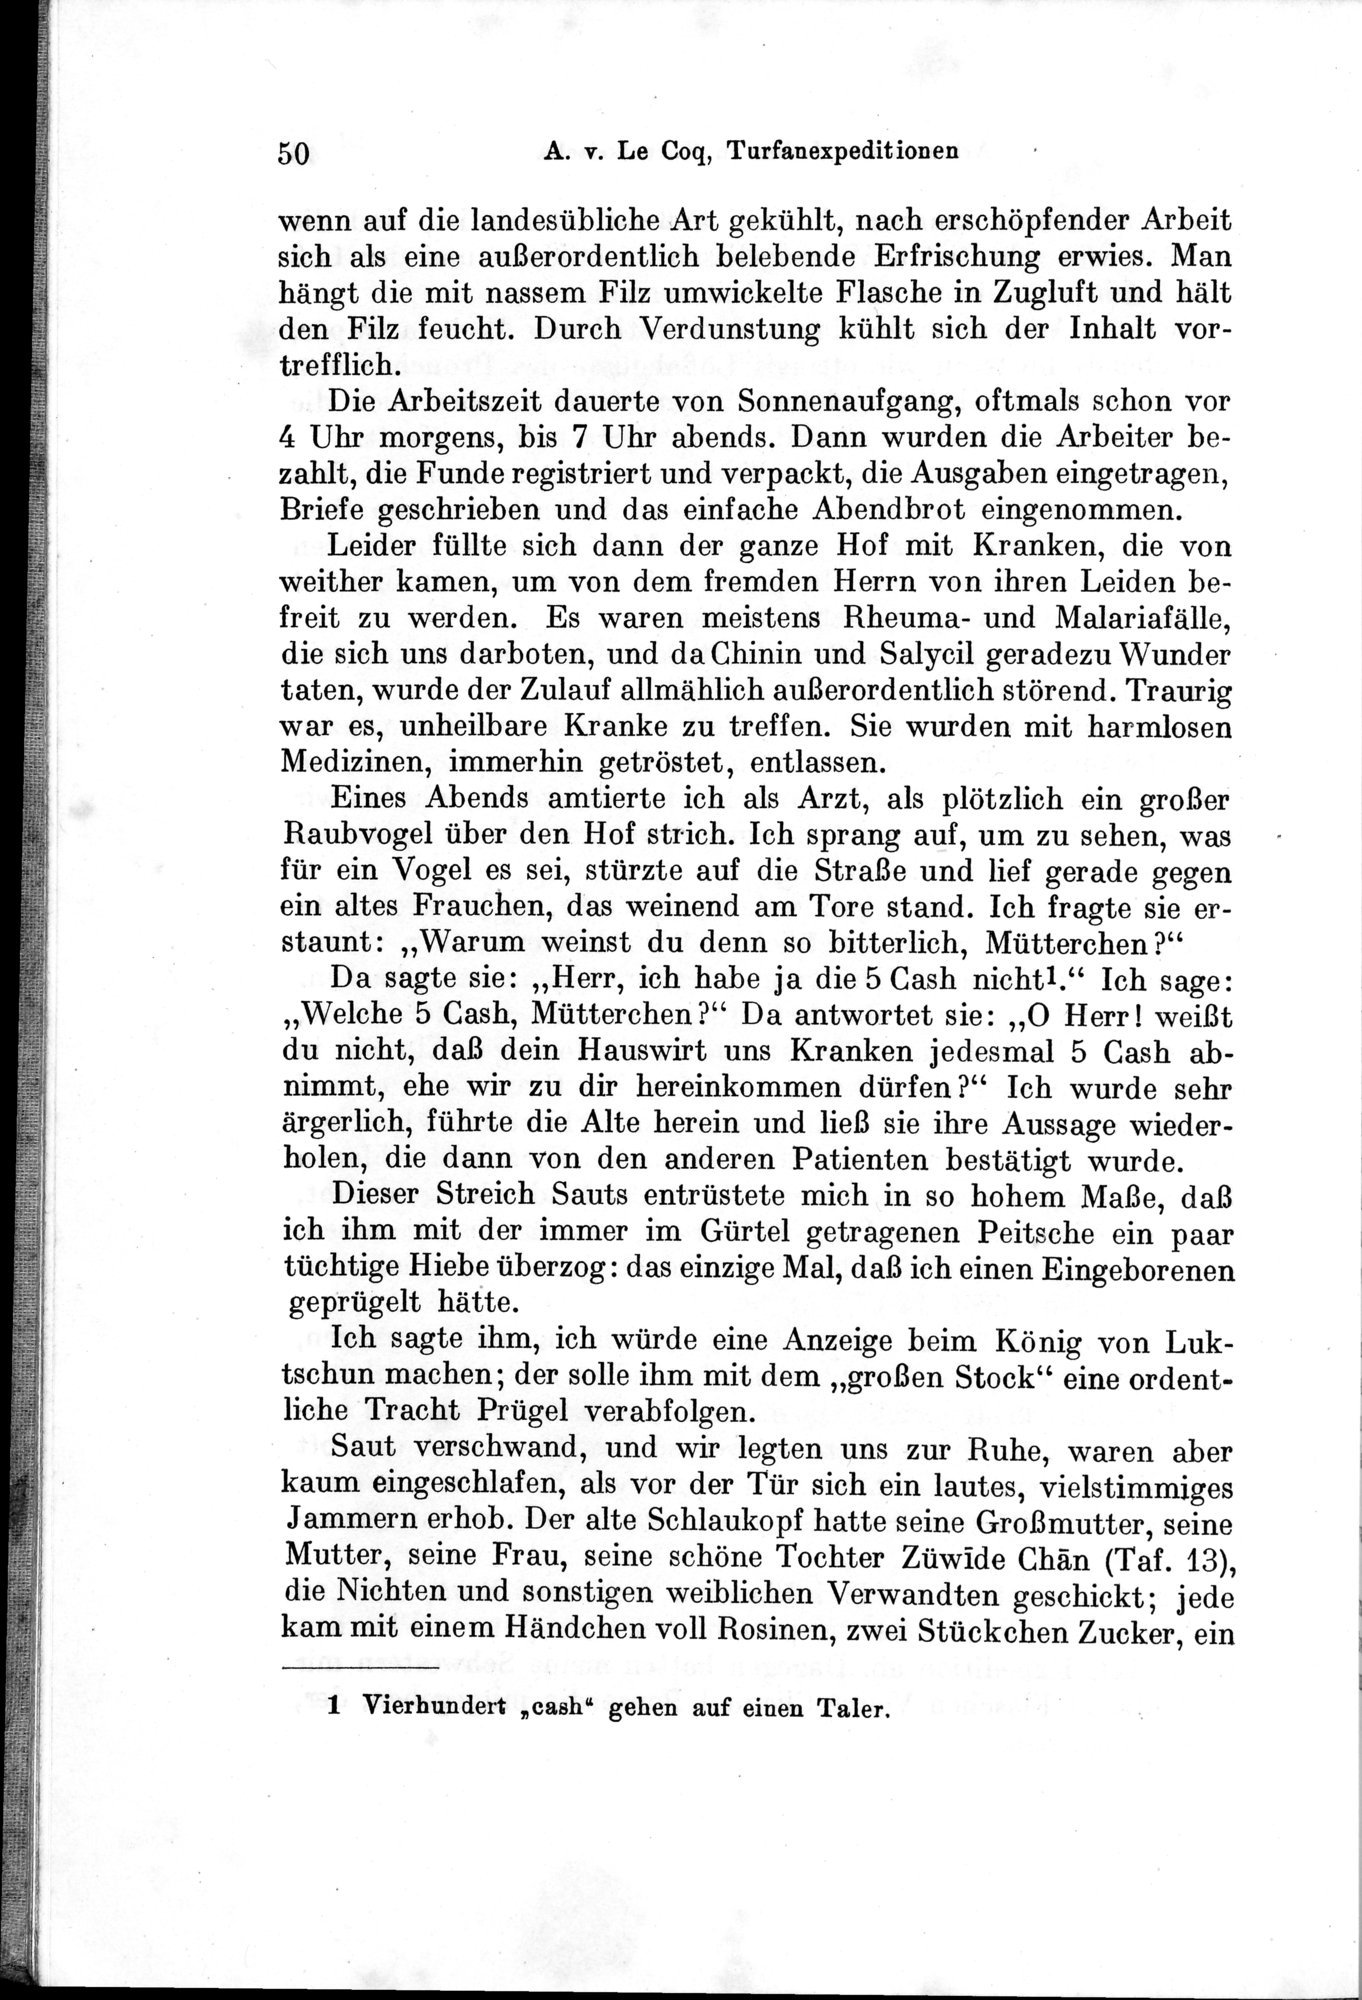 Auf Hellas Spuren in Ostturkistan : vol.1 / Page 78 (Grayscale High Resolution Image)